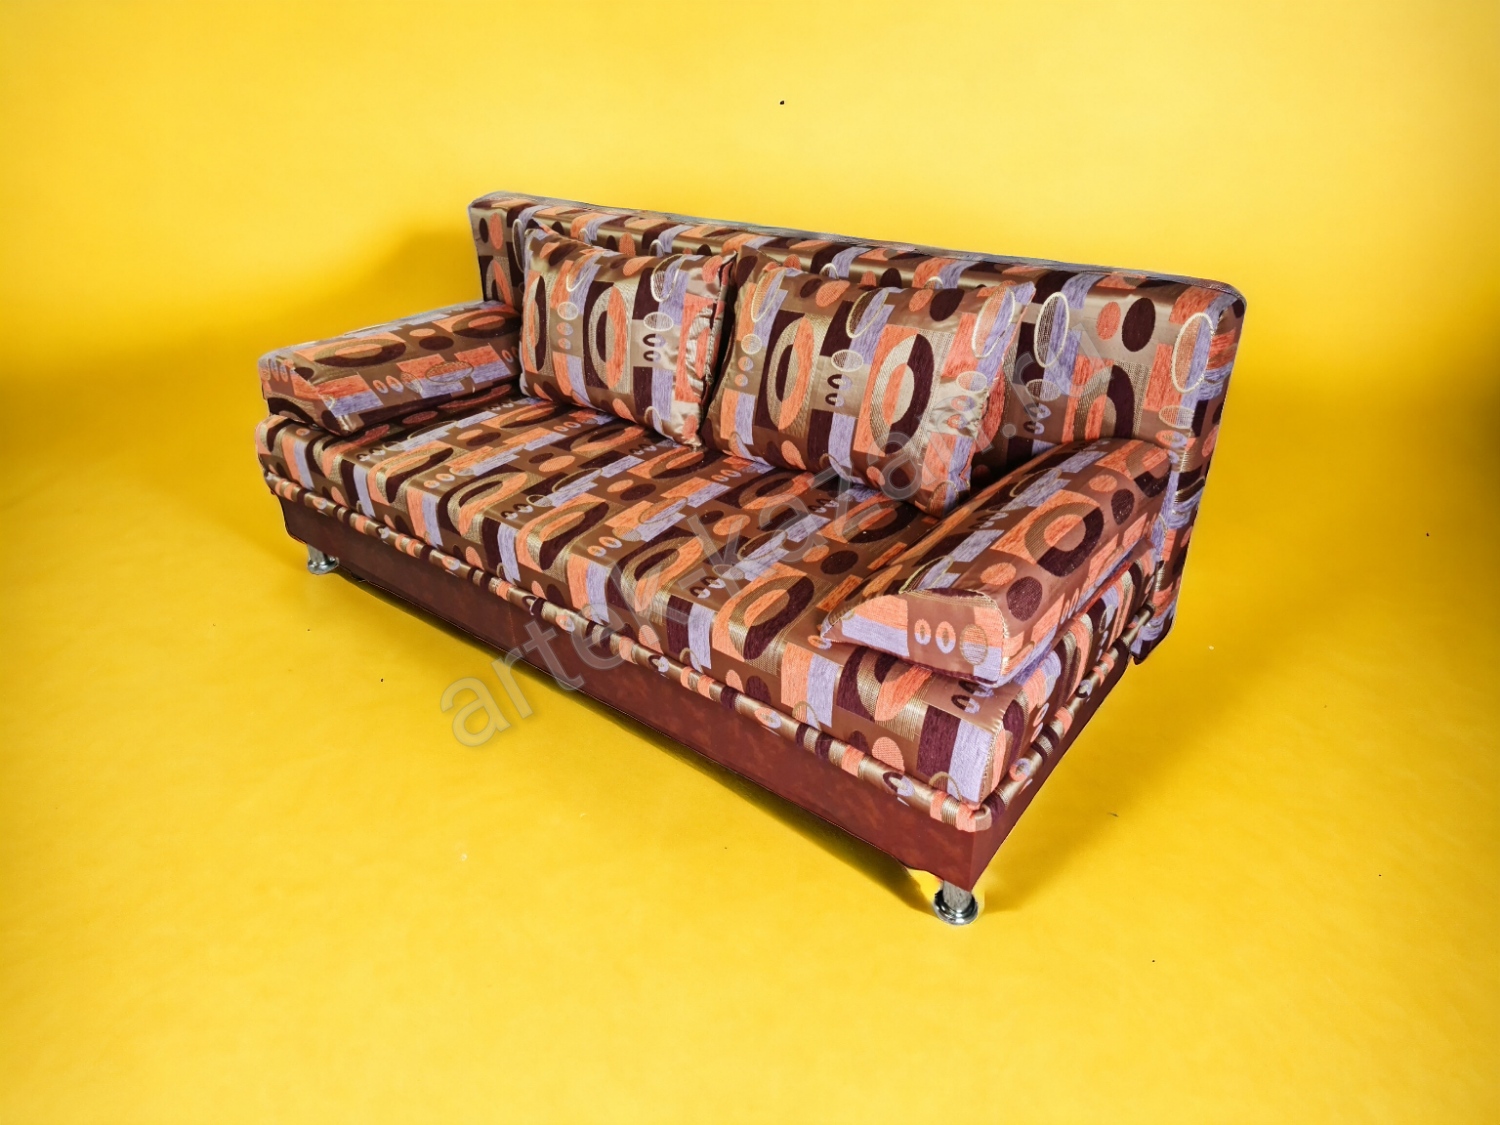 Диван еврокнижка -Эконом- шенилл овалы с преобладающим коричневым цветом, цена 11000руб. Купить недорогой диван по низкой цене от производителя можно у нас.